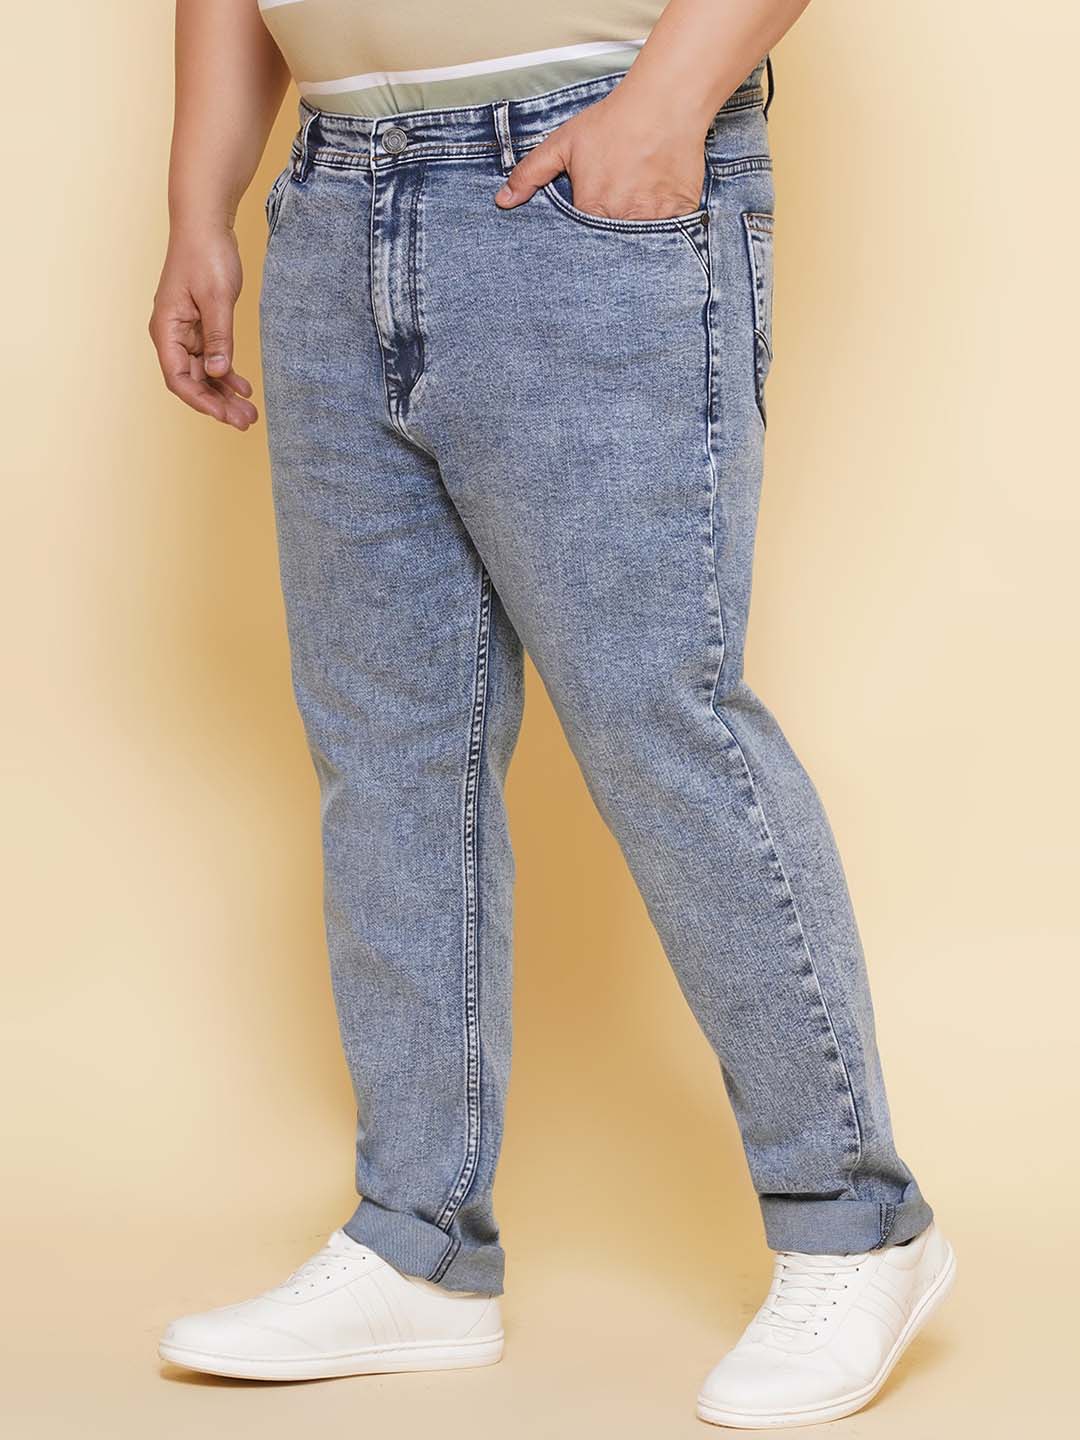 bottomwear/jeans/JPJ27115/jpj27115-3.jpg